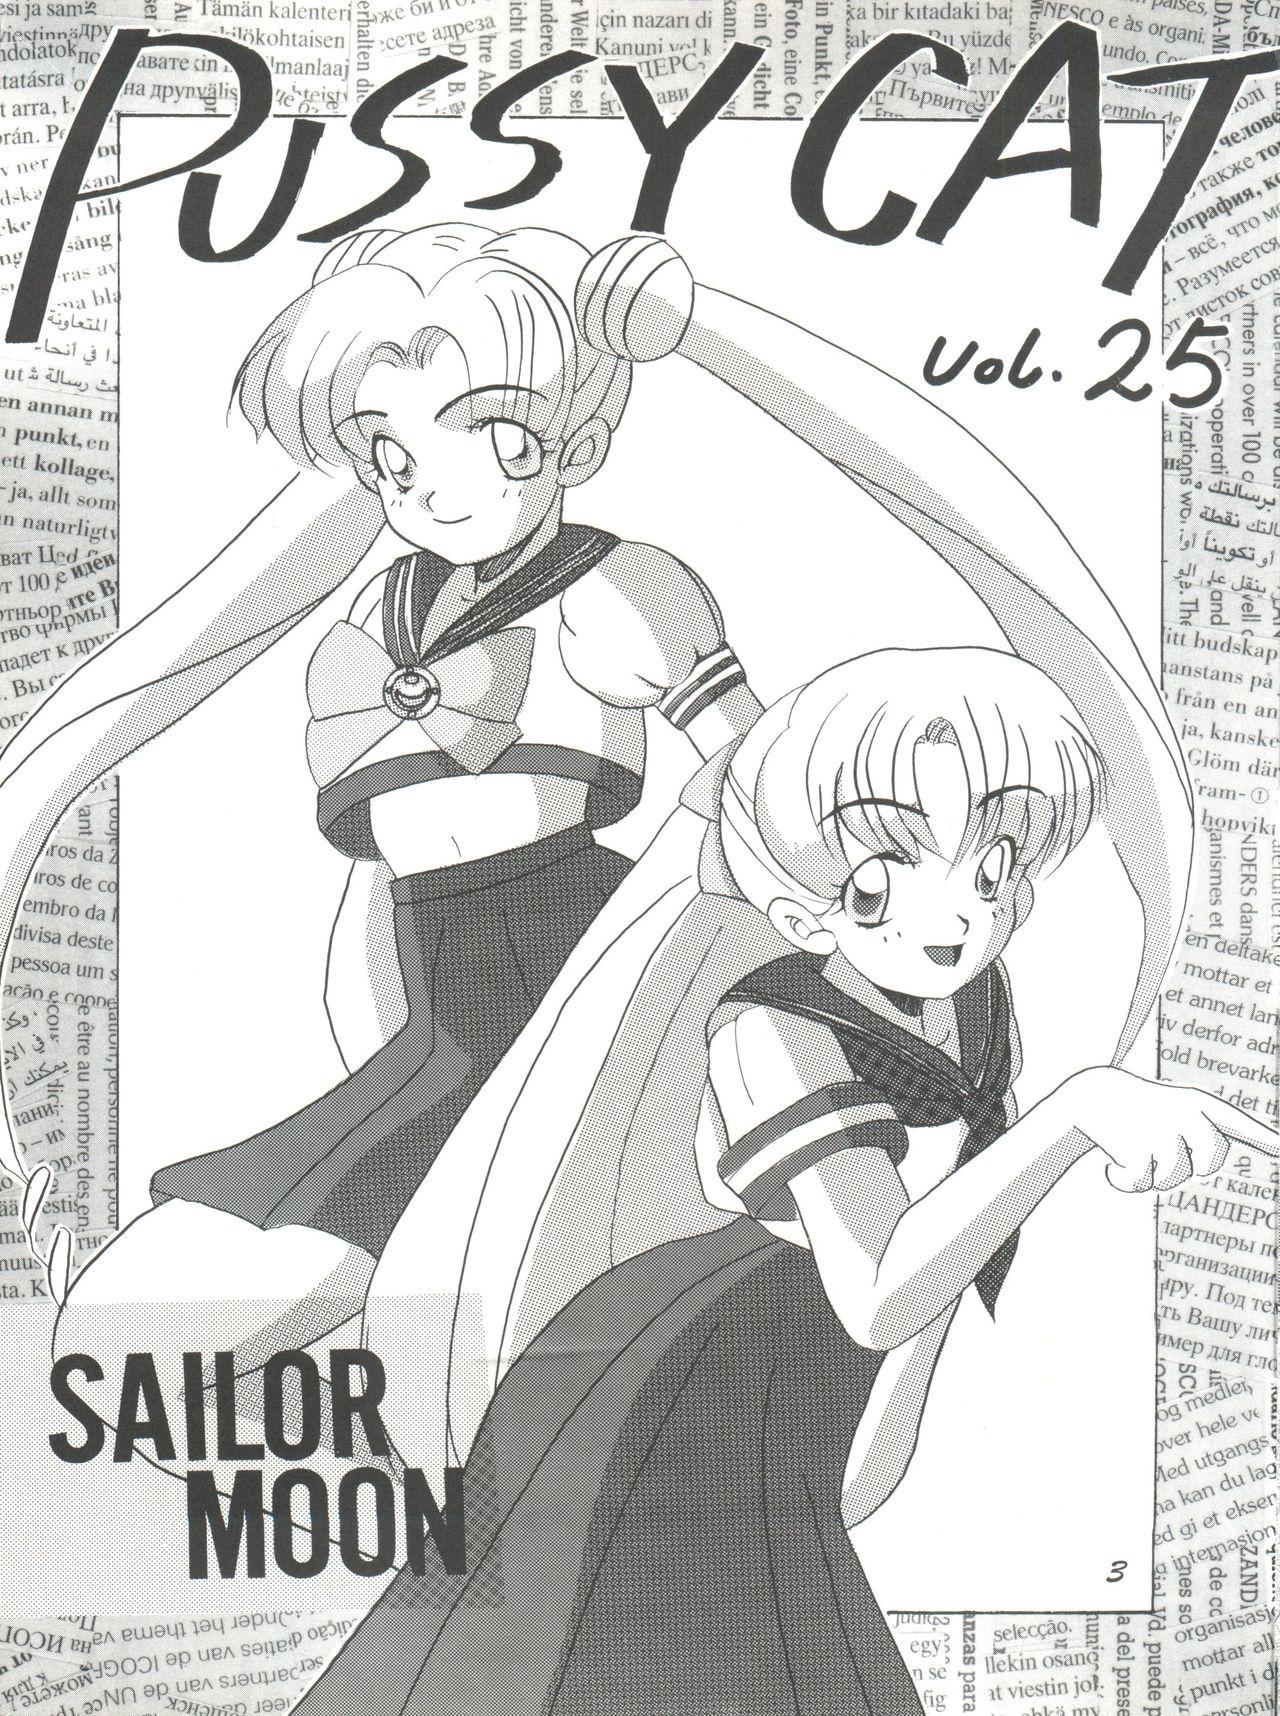 Pussy Cat Vol. 25 Sailor Moon 2 2